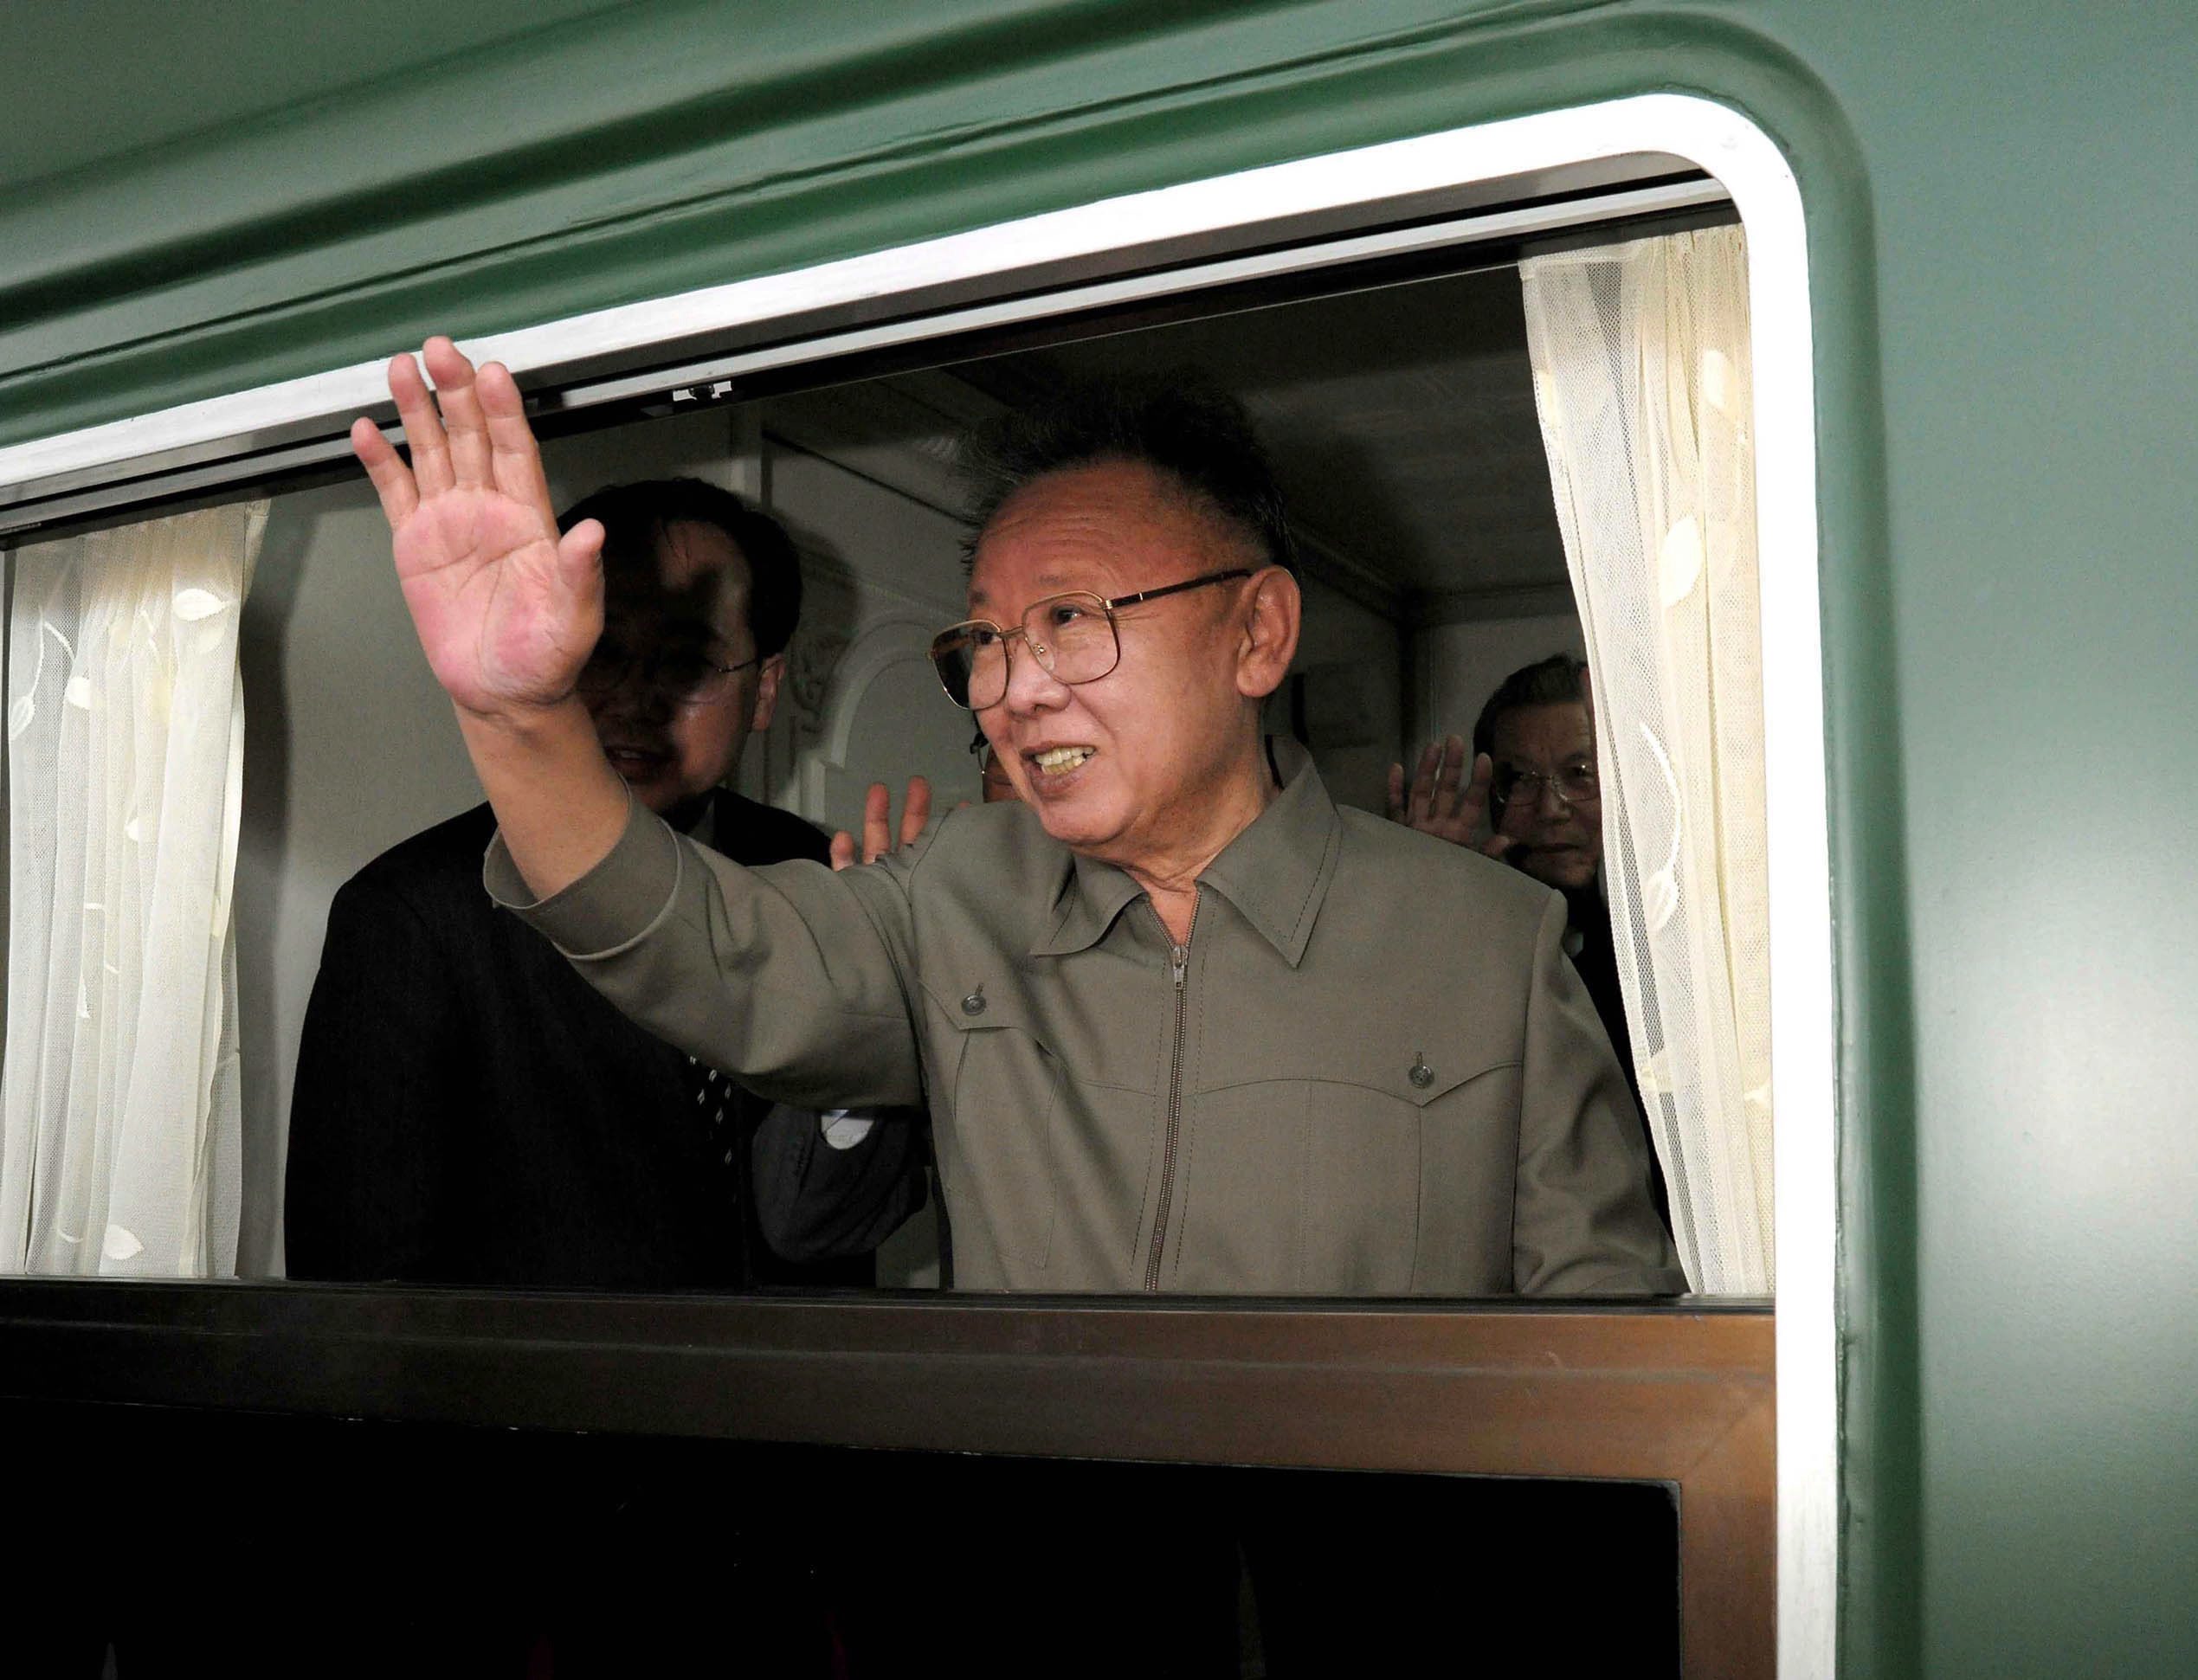 Лидерът на Северна Корея Ким Чен-ир, сниман във влак през май 2010 г.